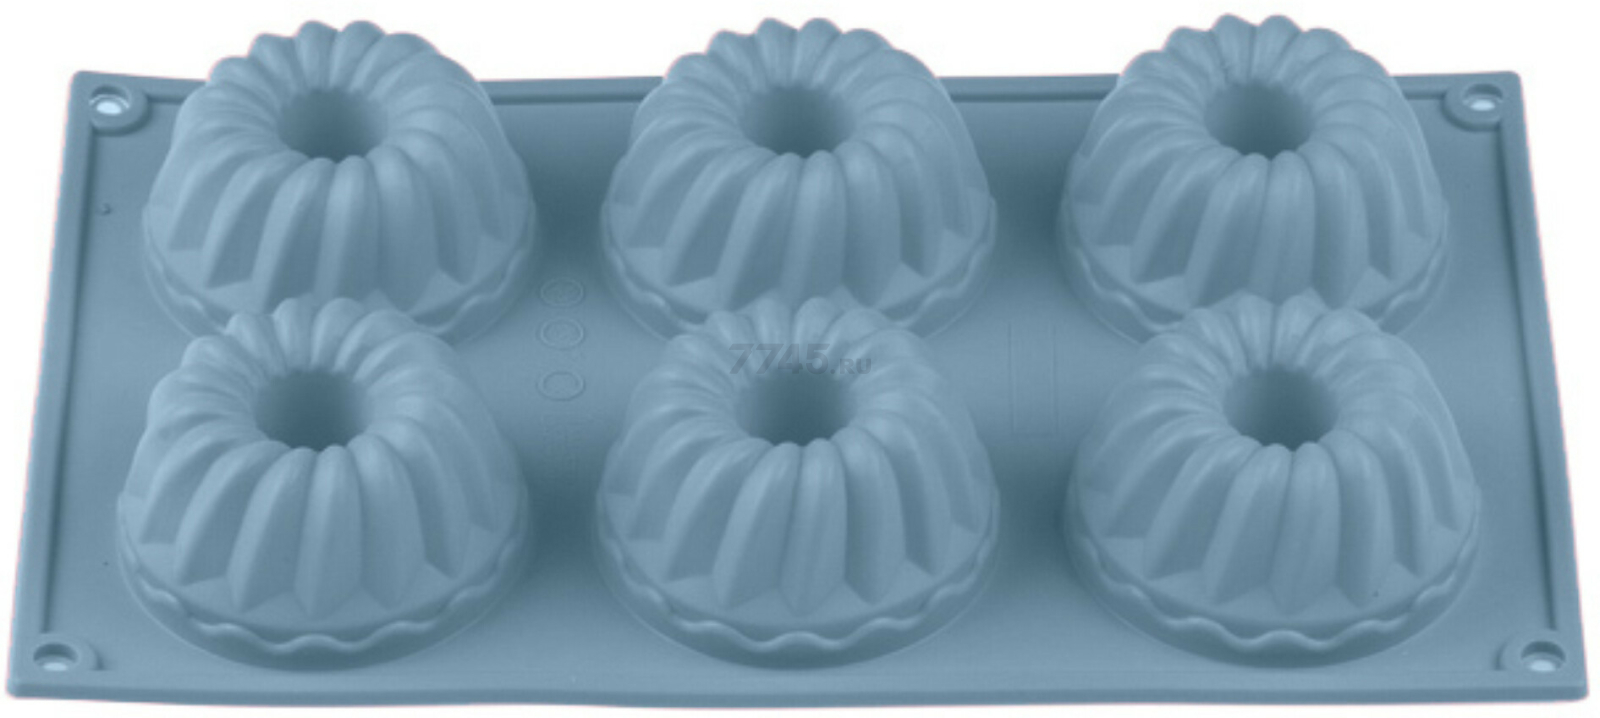 Форма для выпечки силиконовая прямоугольная на 6 кексов 28,5х17,5х4 см PERFECTO LINEA Bluestone голубая (20-003728)